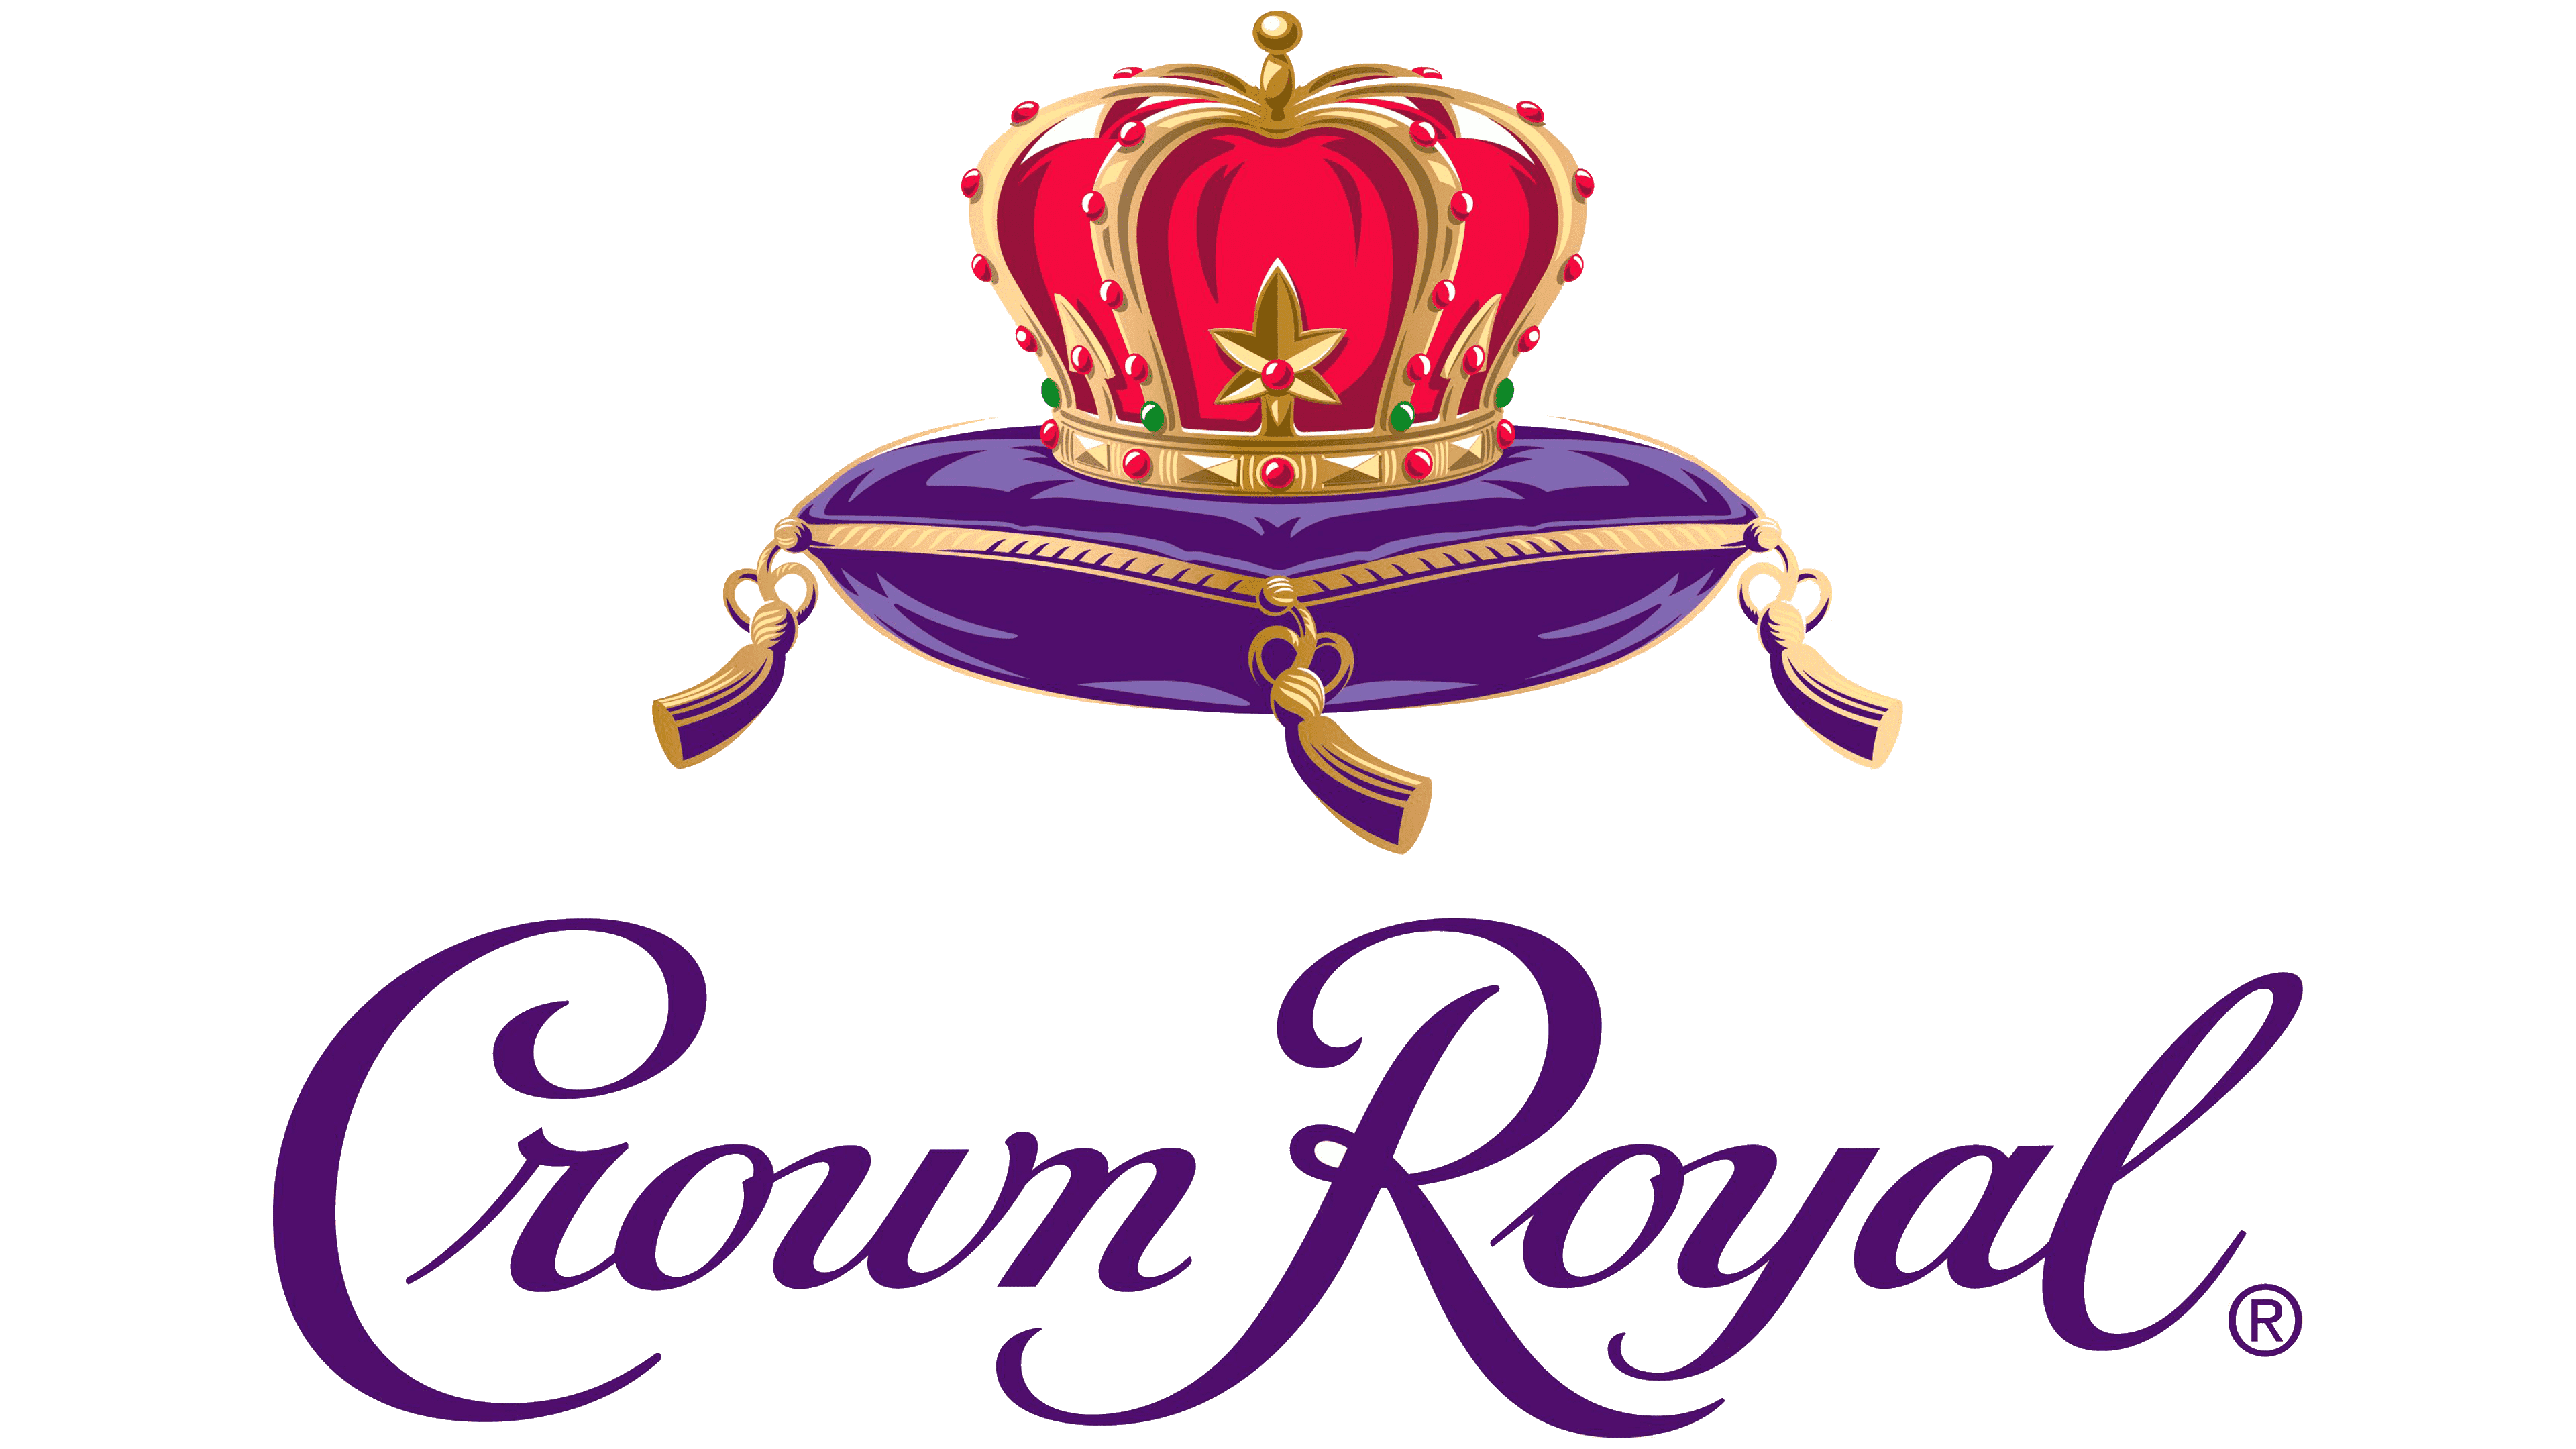 Crown Royal z własną destylarnią